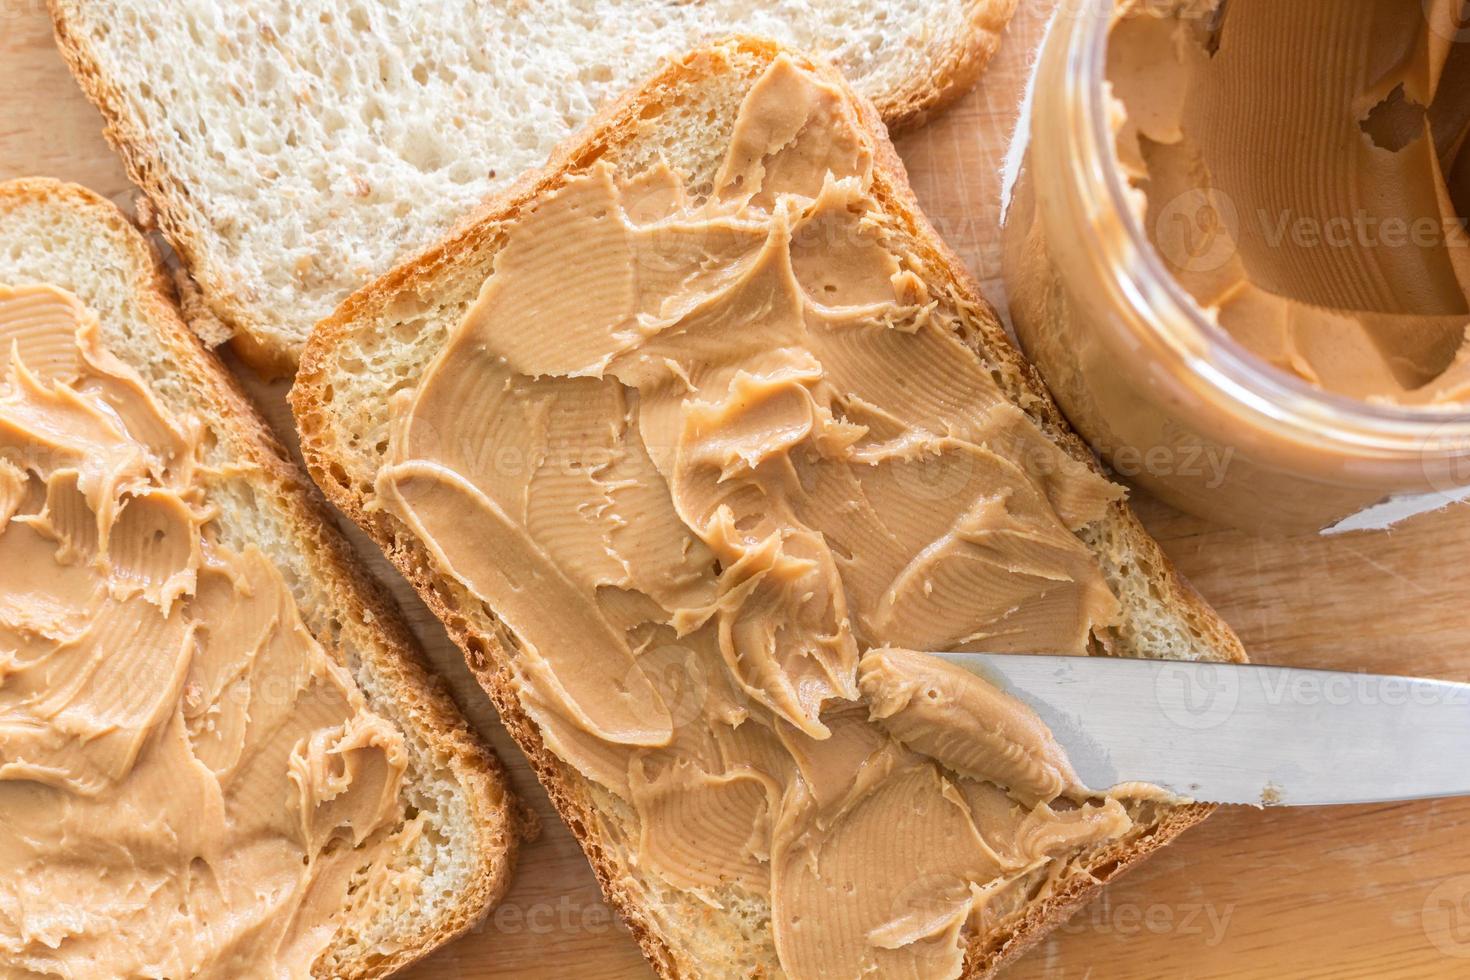 peanut butter sandwich - clean food concept photo